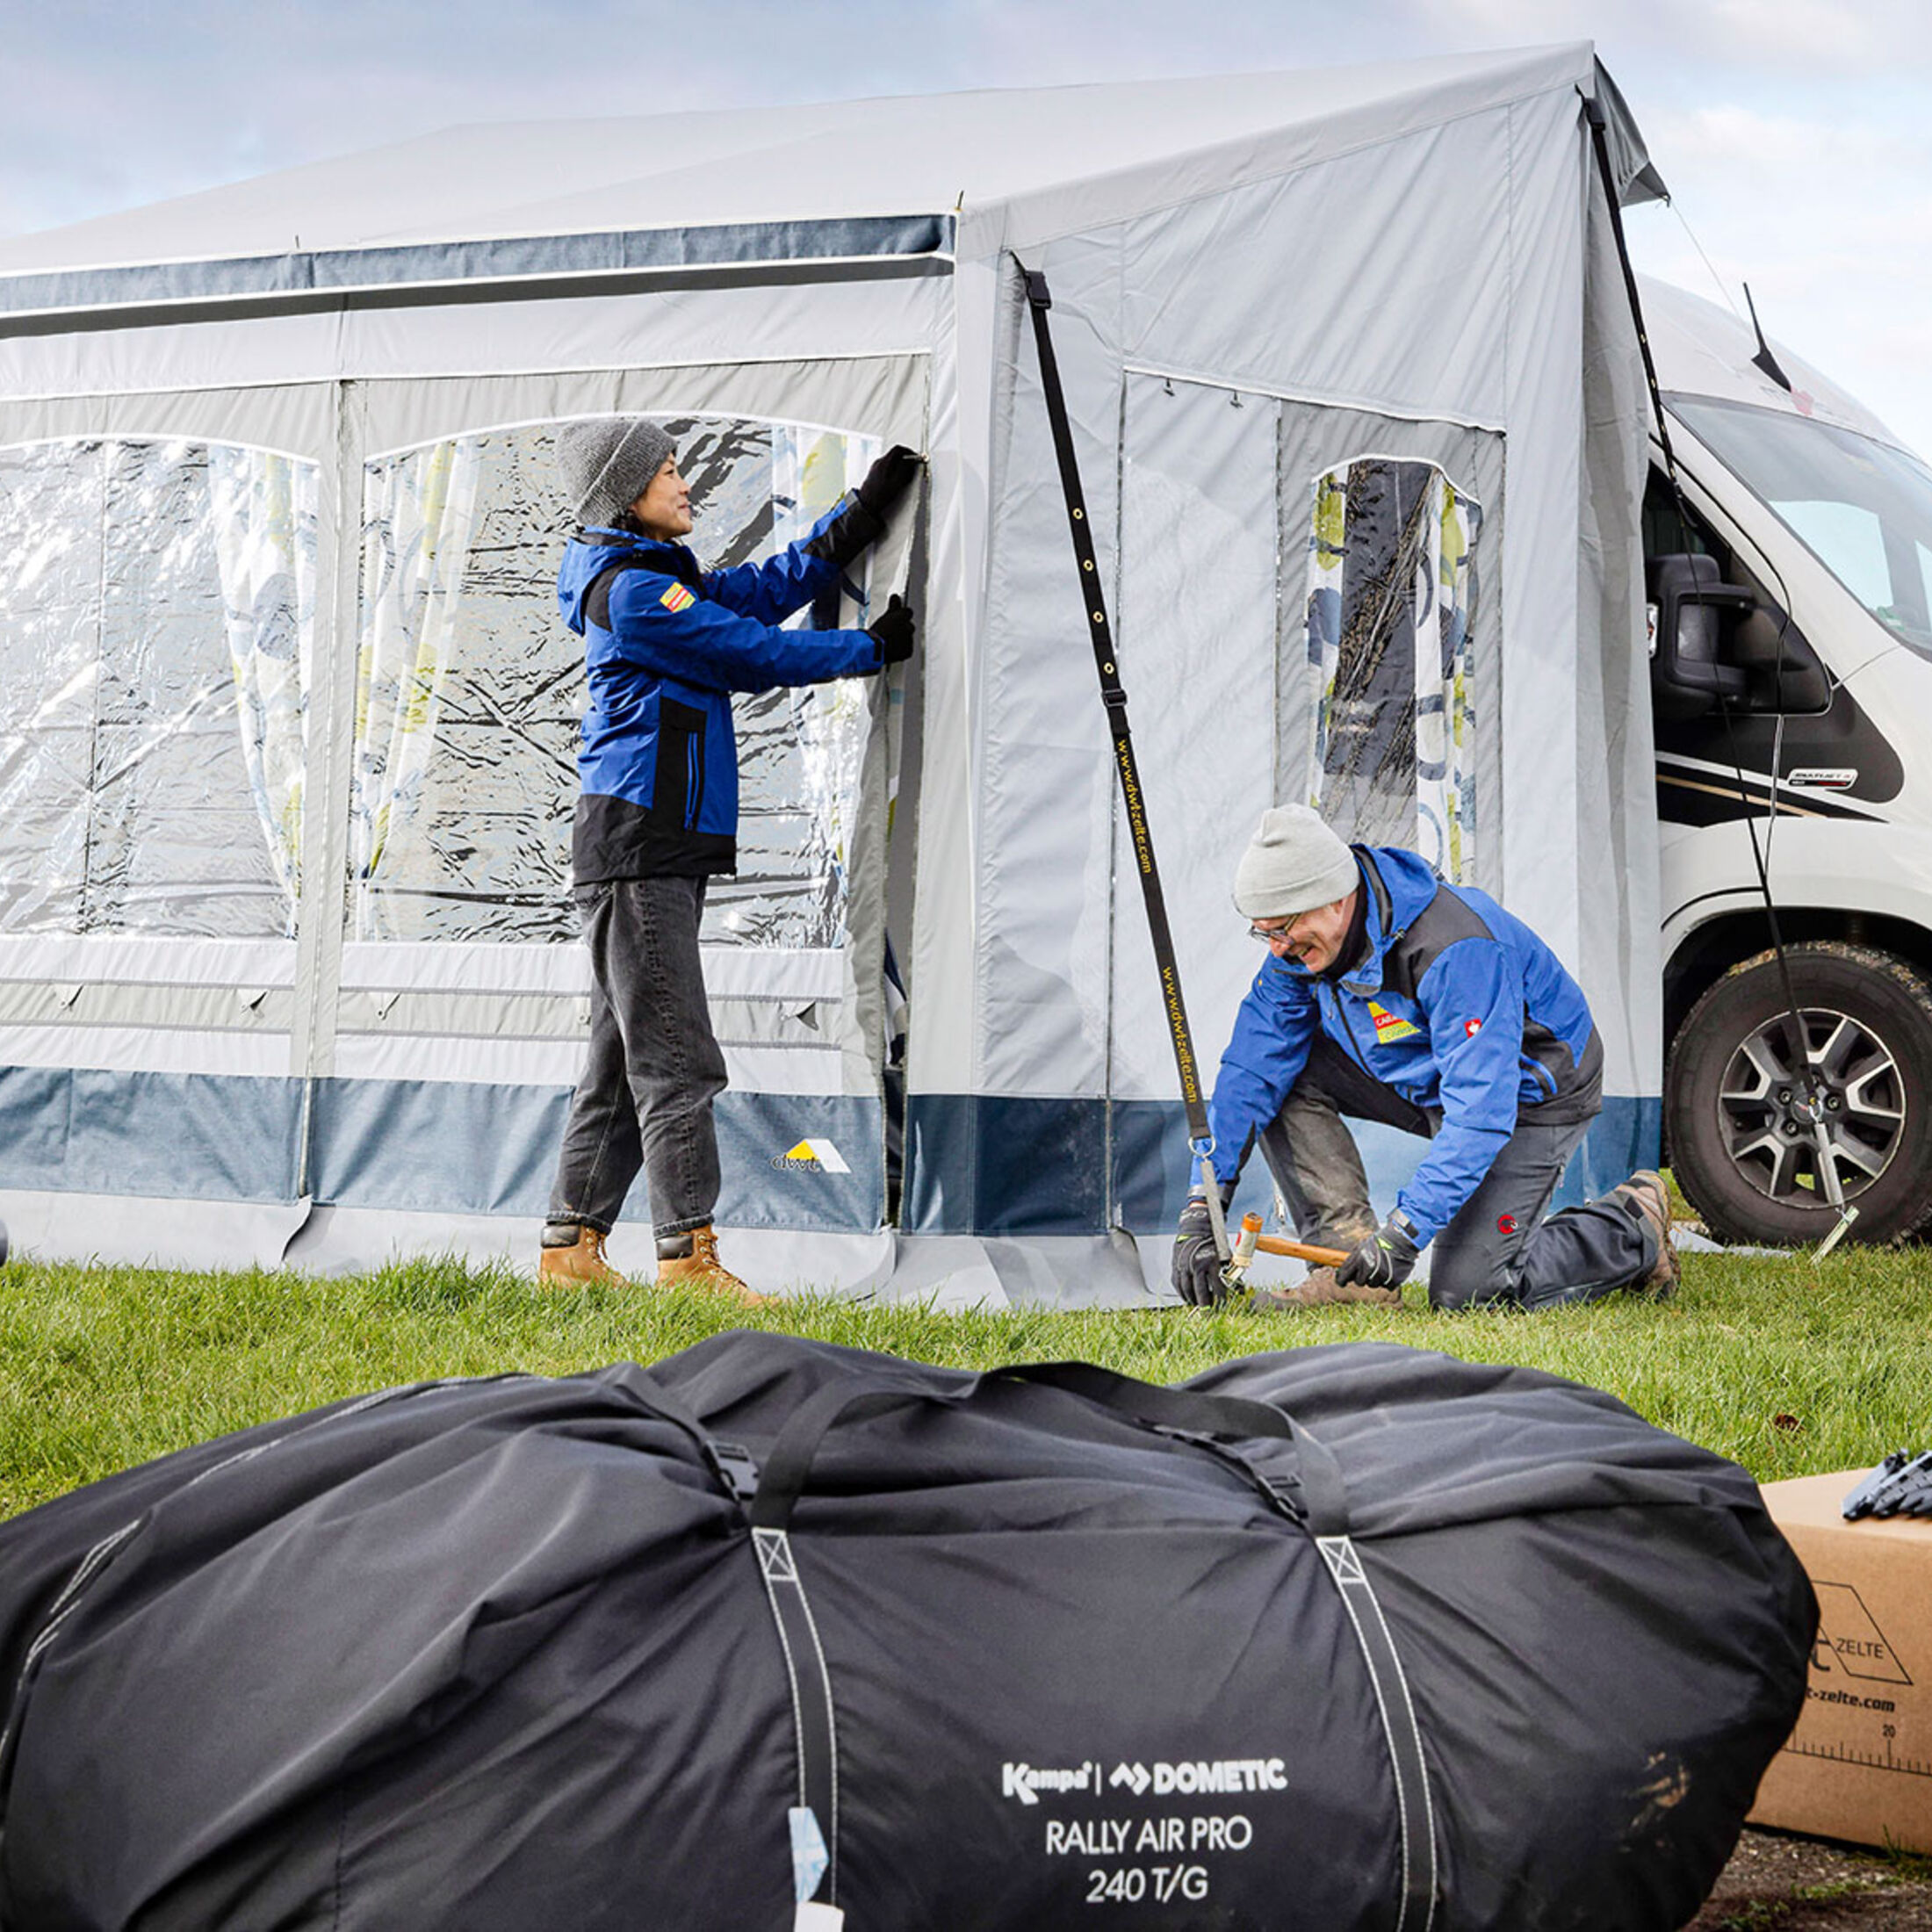 Alternative zum Wohnmobil: So wird Ihr Auto fit fürs Camping - Panorama